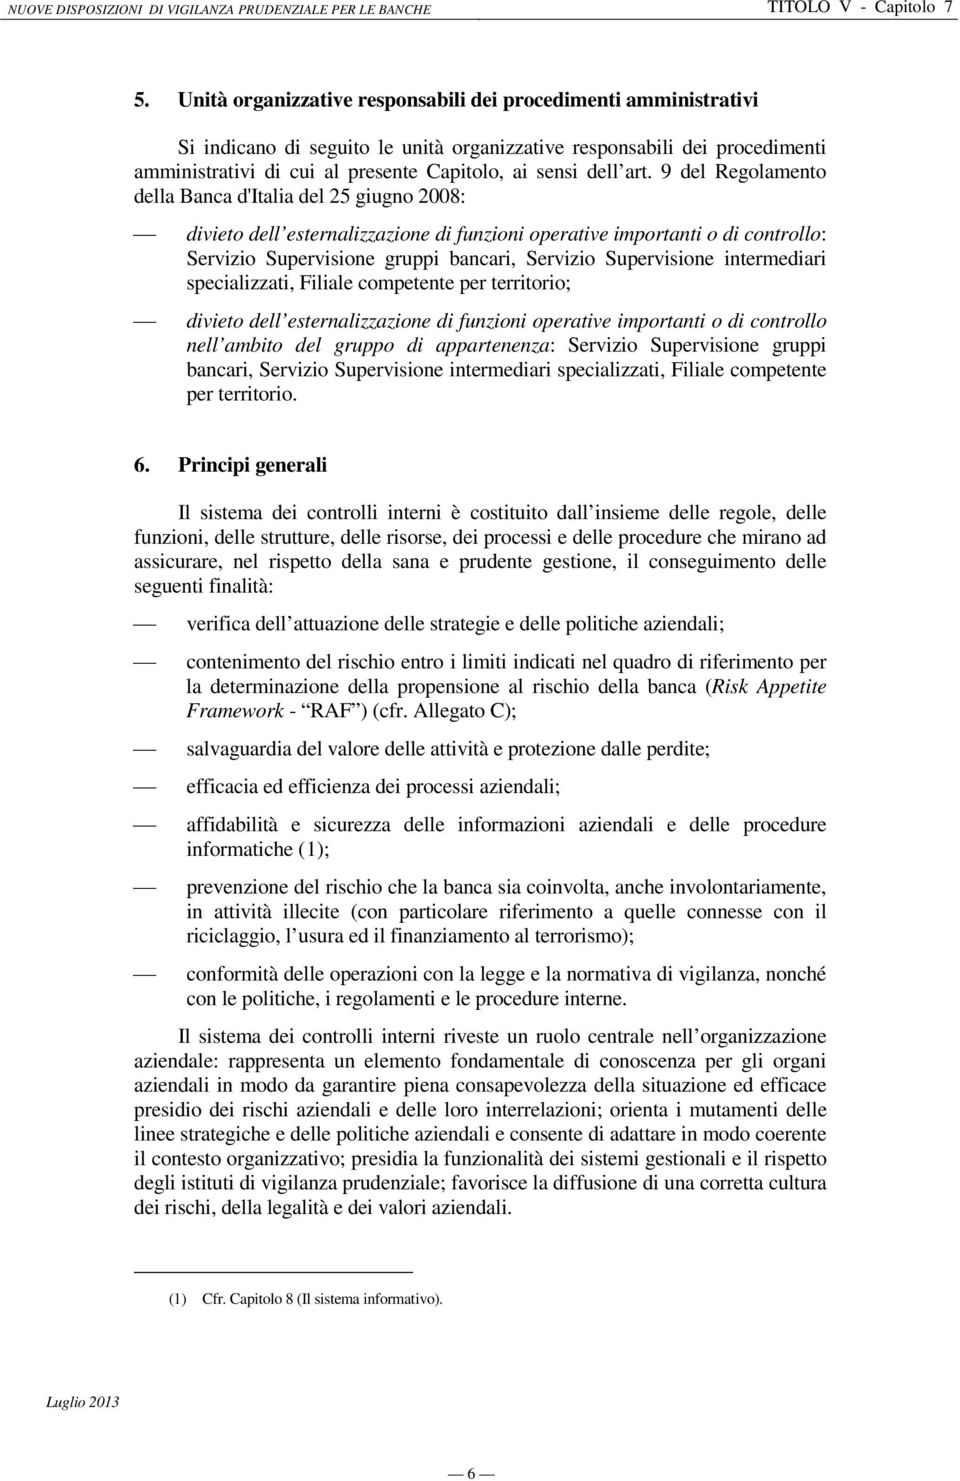 9 del Regolamento della Banca d'italia del 25 giugno 2008: divieto dell esternalizzazione di funzioni operative importanti o di controllo: Servizio Supervisione gruppi bancari, Servizio Supervisione